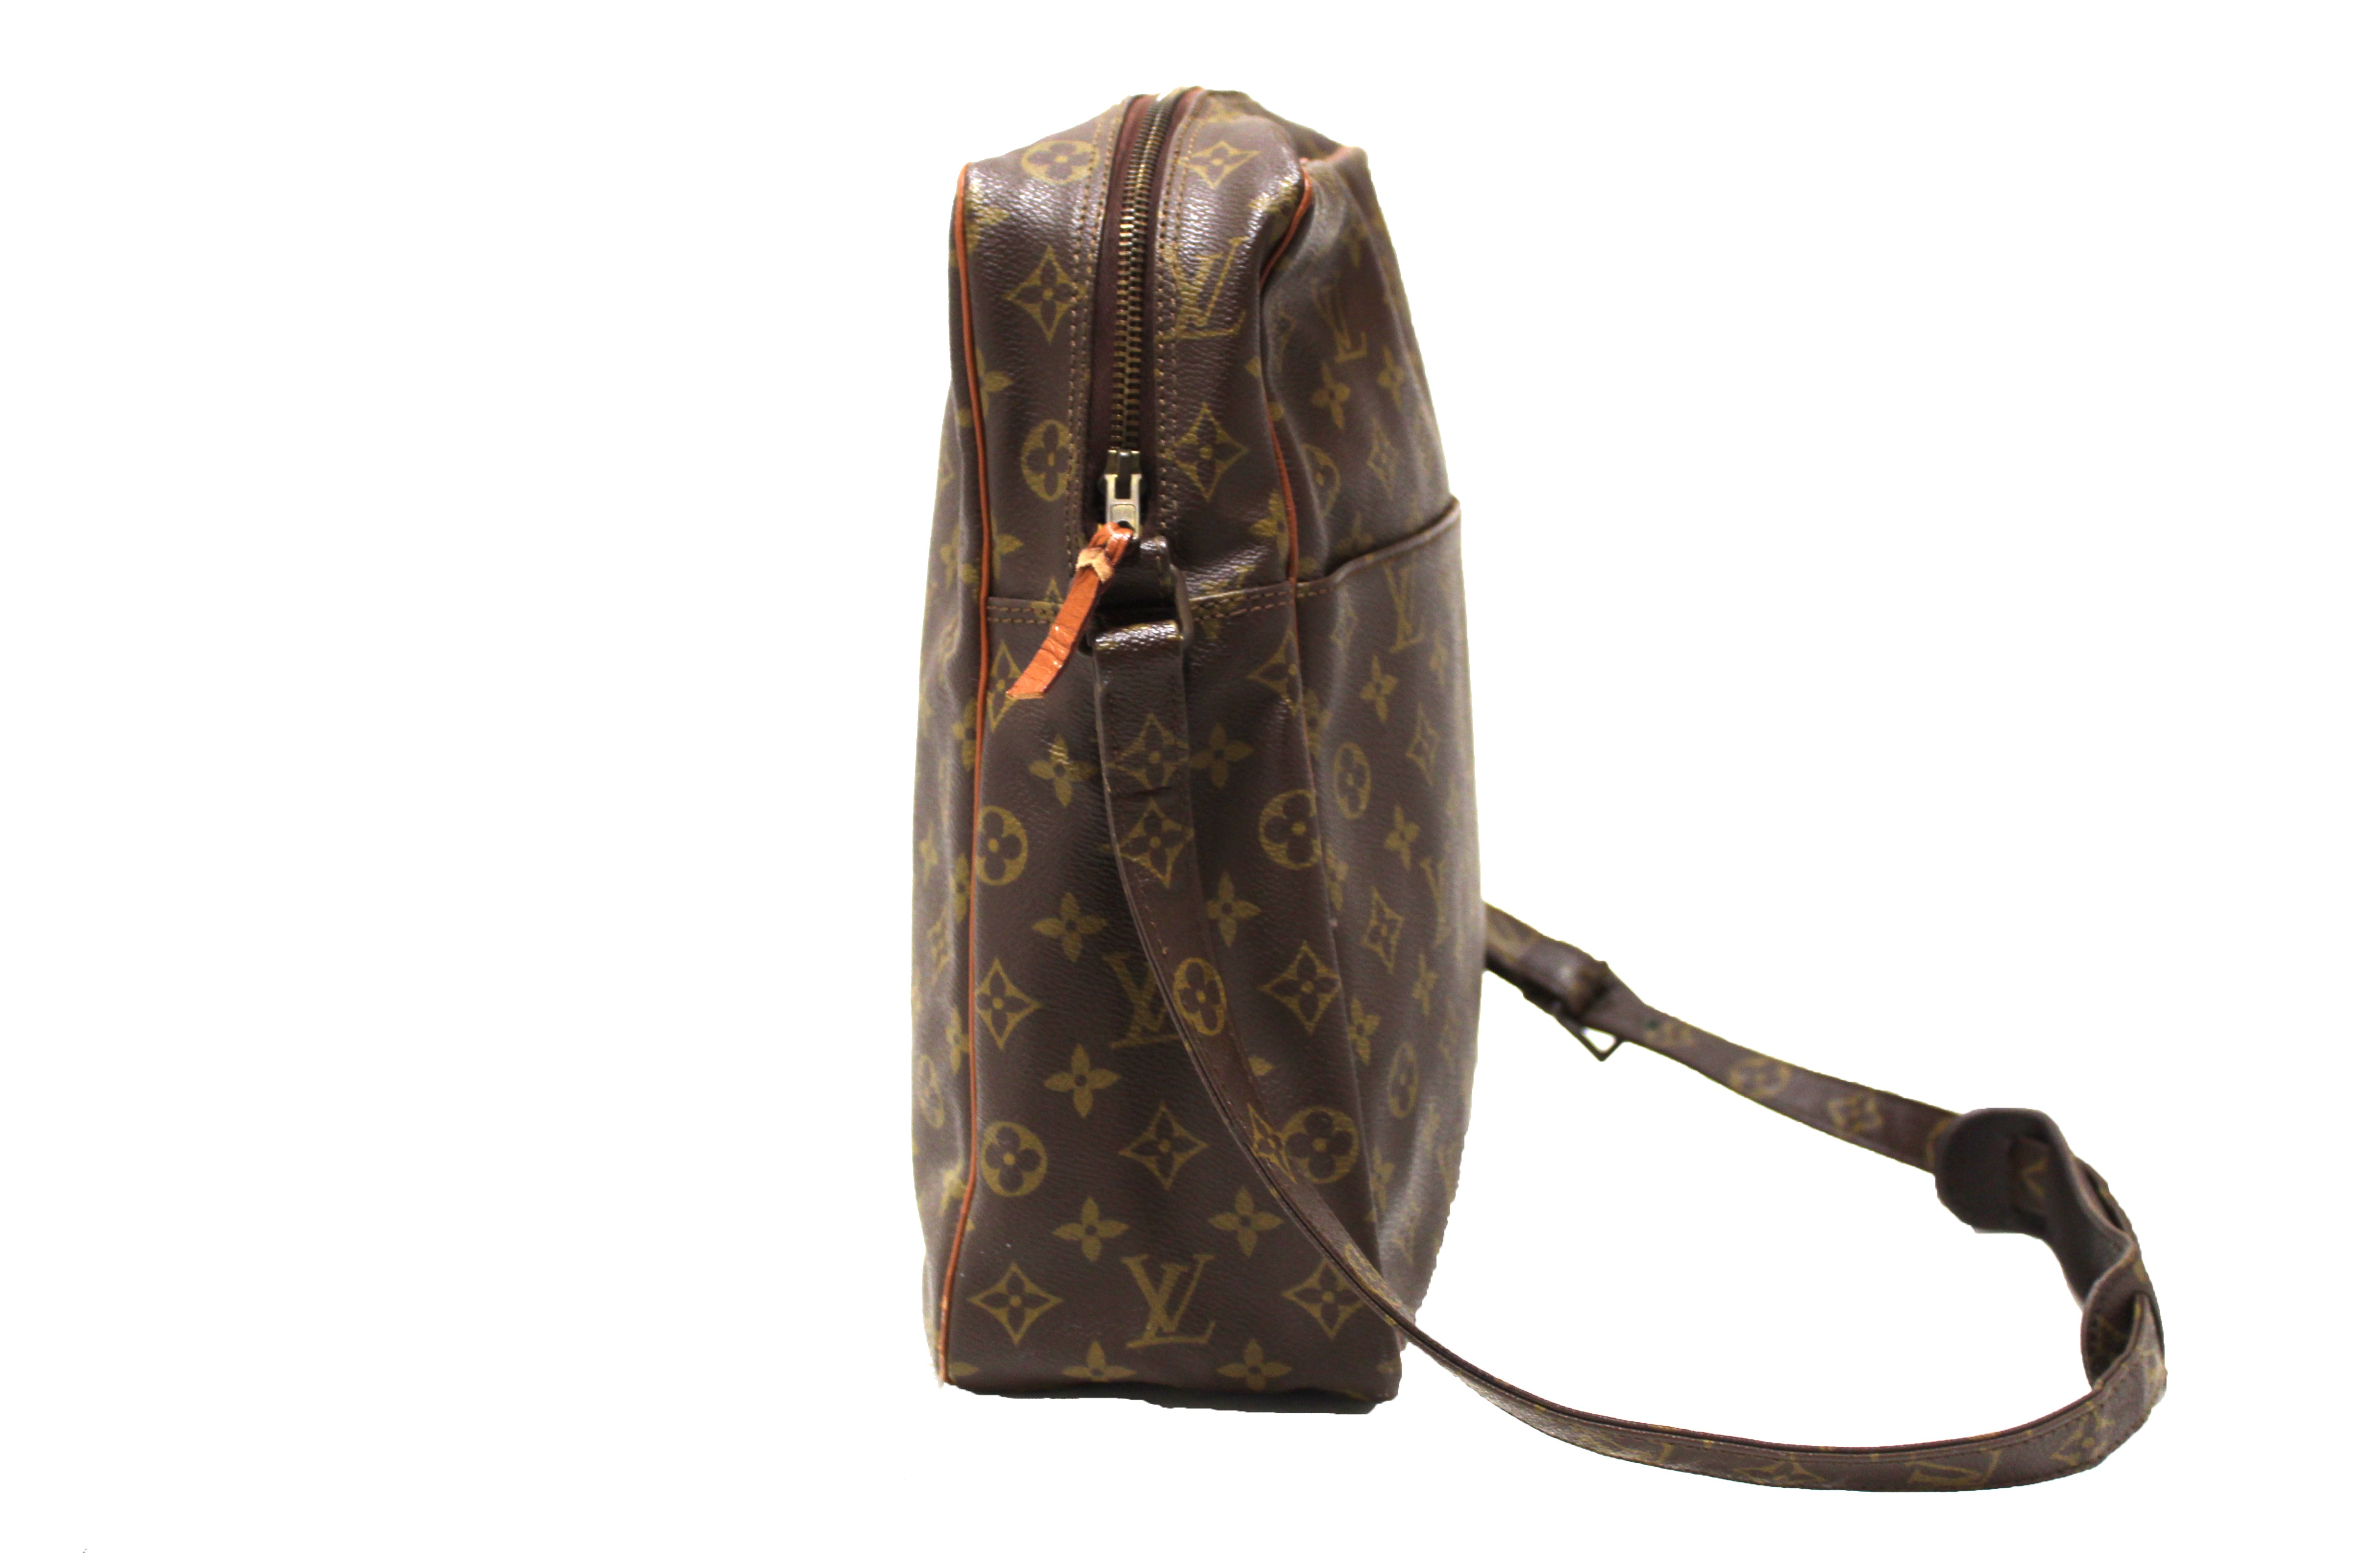 LOUIS VUITTON vintage messenger bag in brown monogram canvas and leather -  VALOIS VINTAGE PARIS